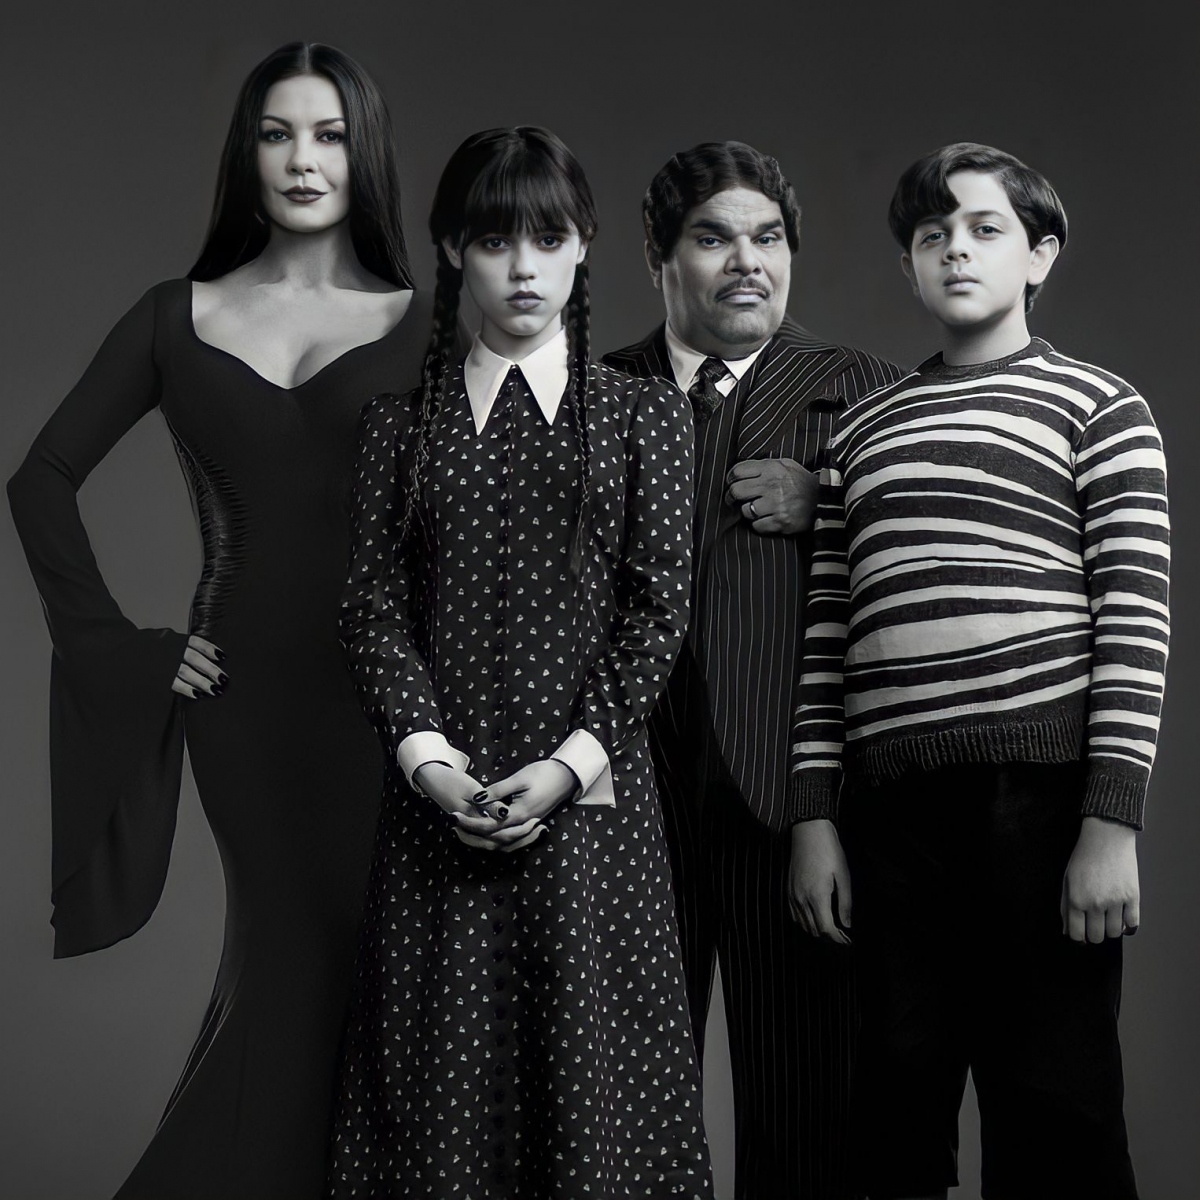 Loạt phim “The Addams Family”: Cơn sốt kéo dài nhiều thập kỷ - Ảnh 4.